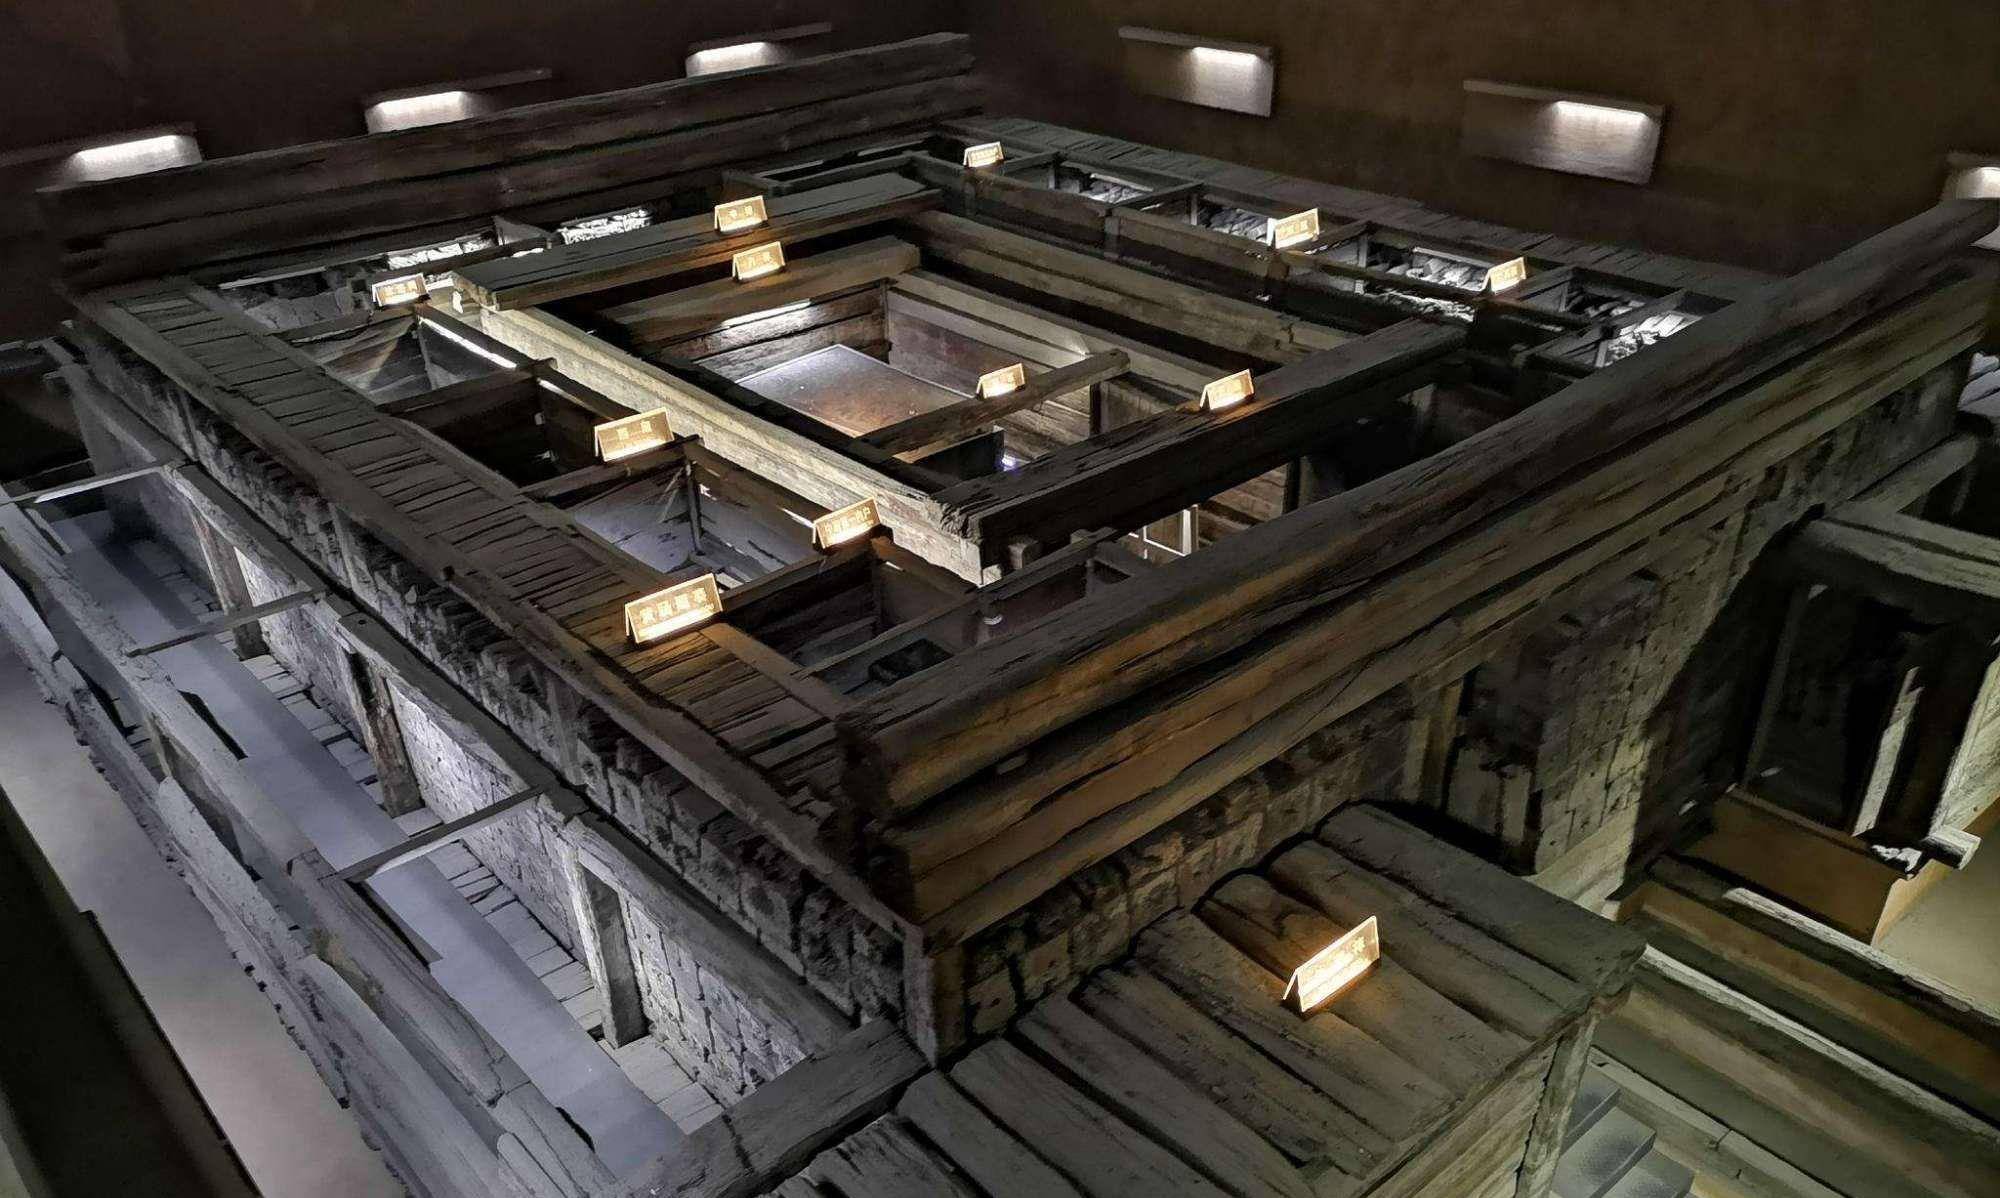 原创现代技术都无法挖掘的秦始皇陵地宫到底隐藏着哪些未解之谜